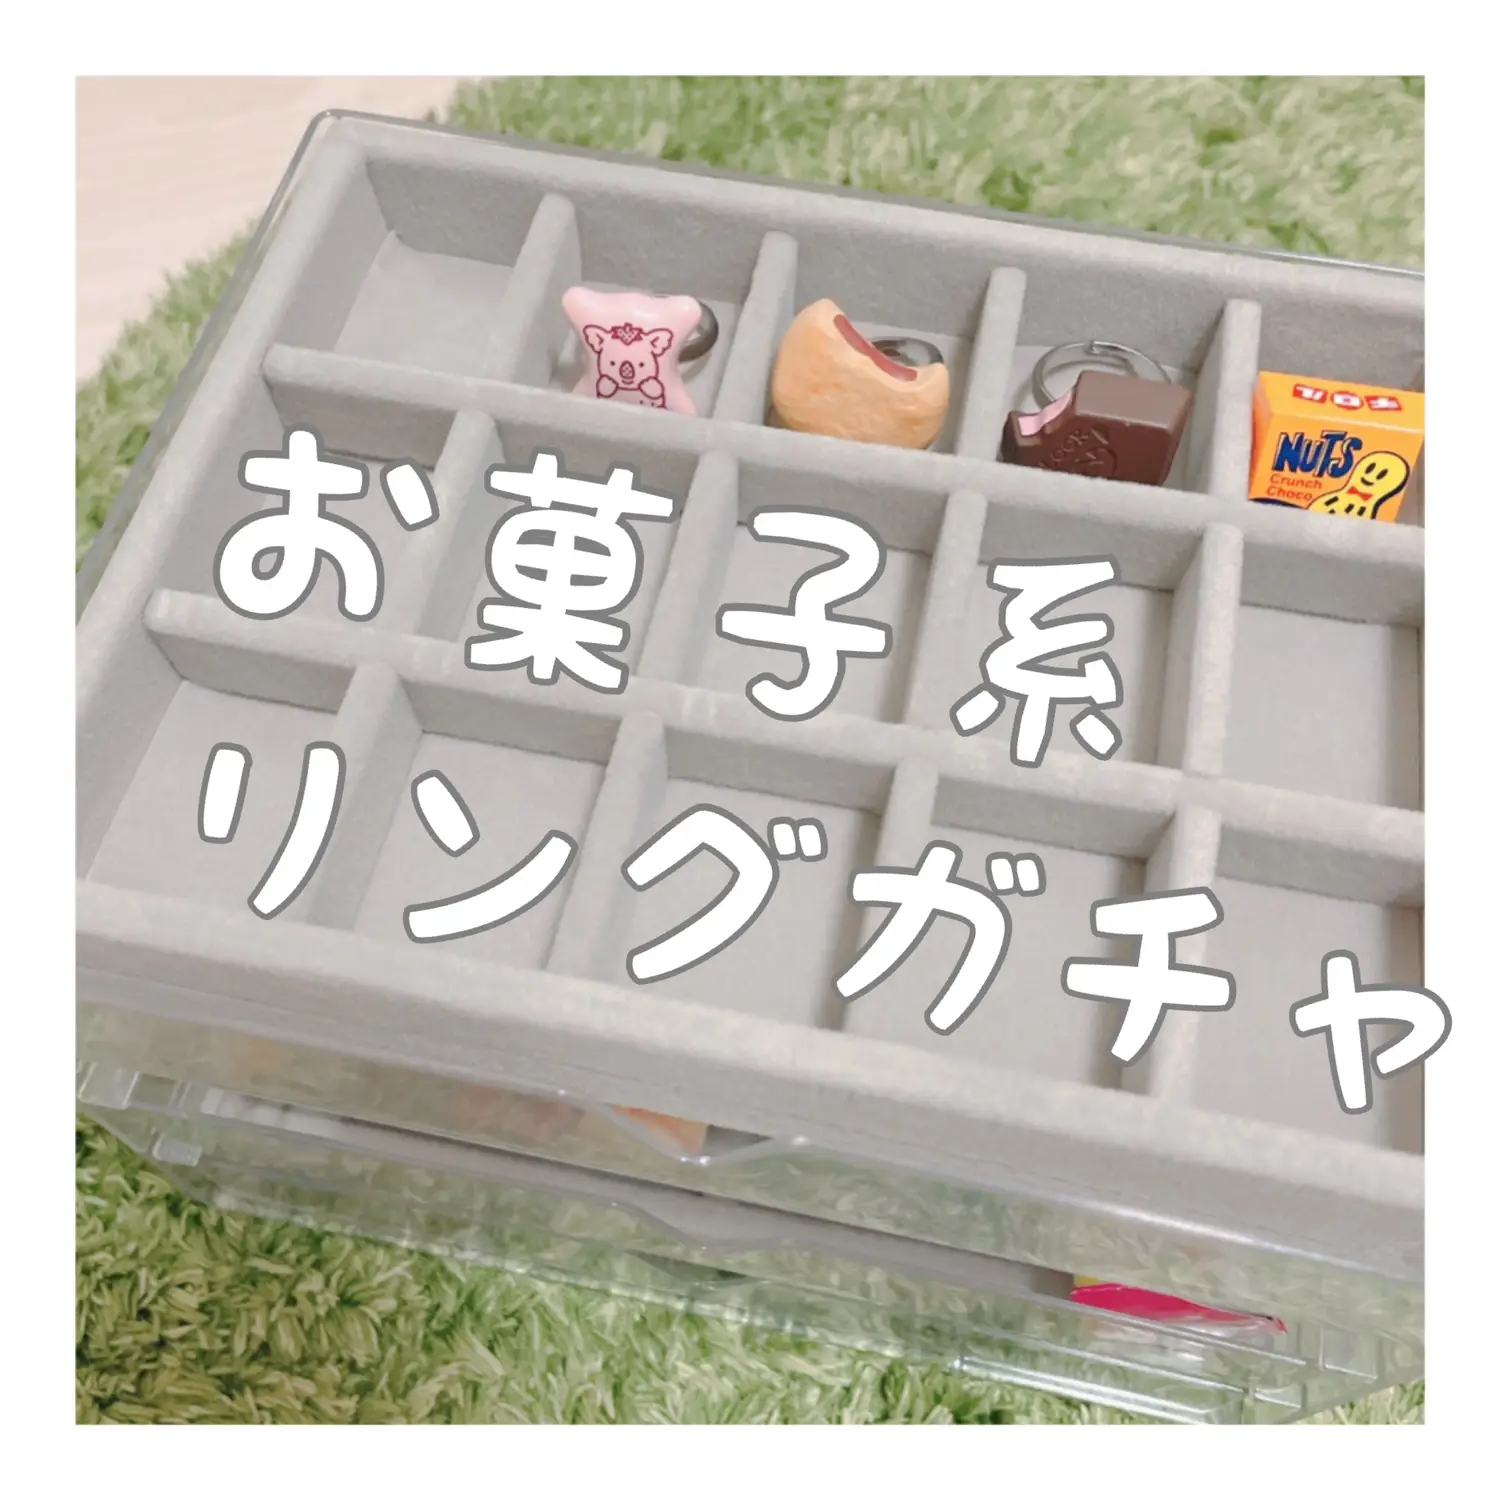 110アソートパッケージ お菓子チャーム - 各種パーツ